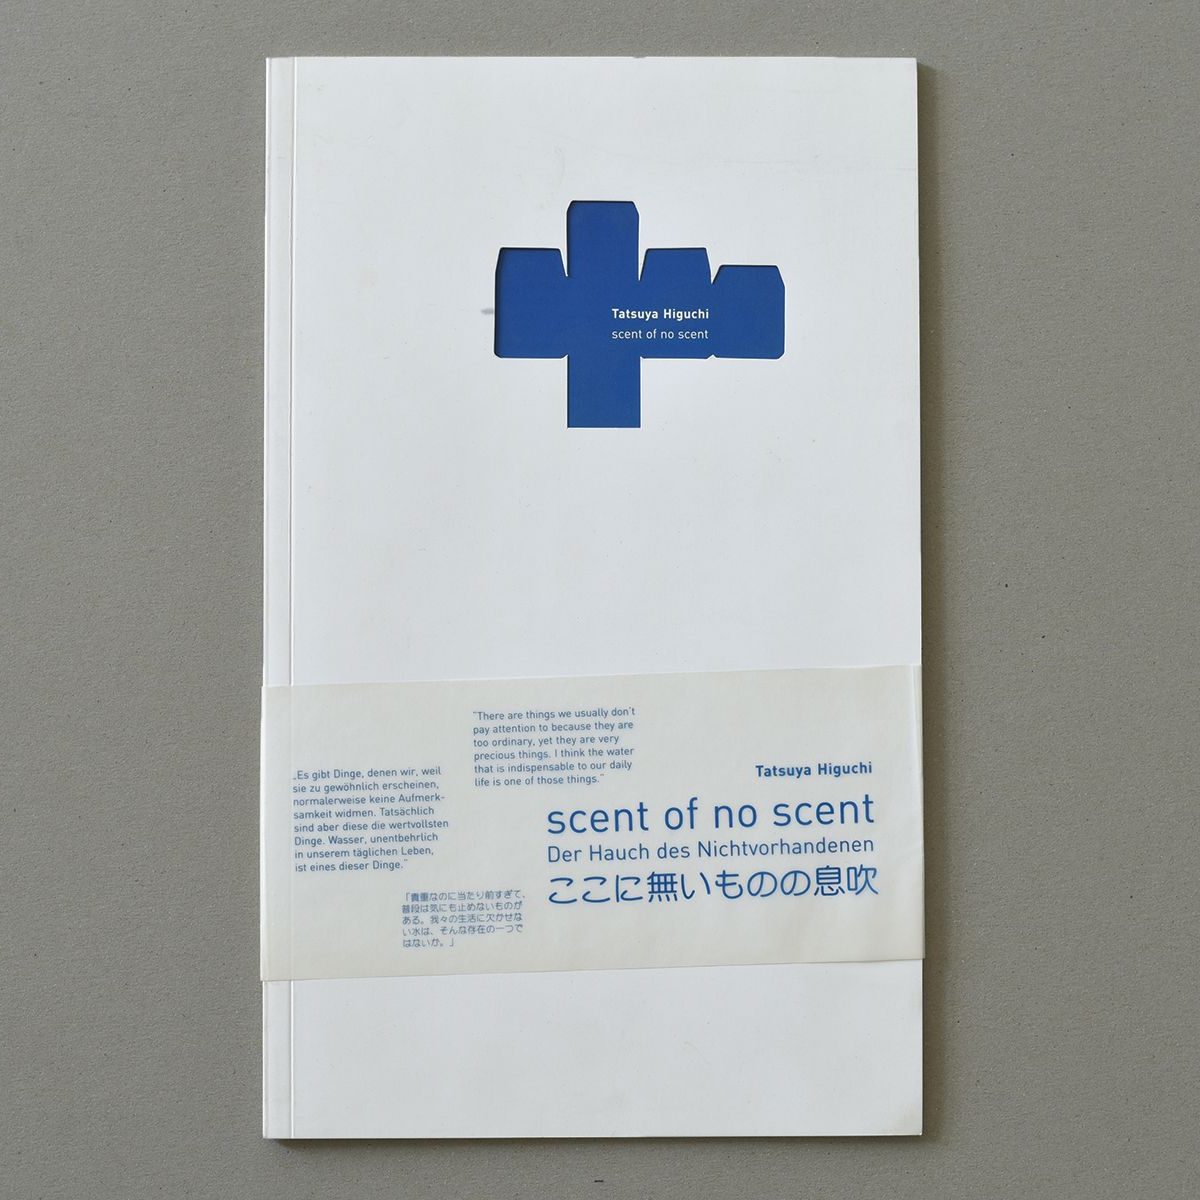 Katalog Tatsuya Higuchi – Der Hauch des Nichtvorhandenen